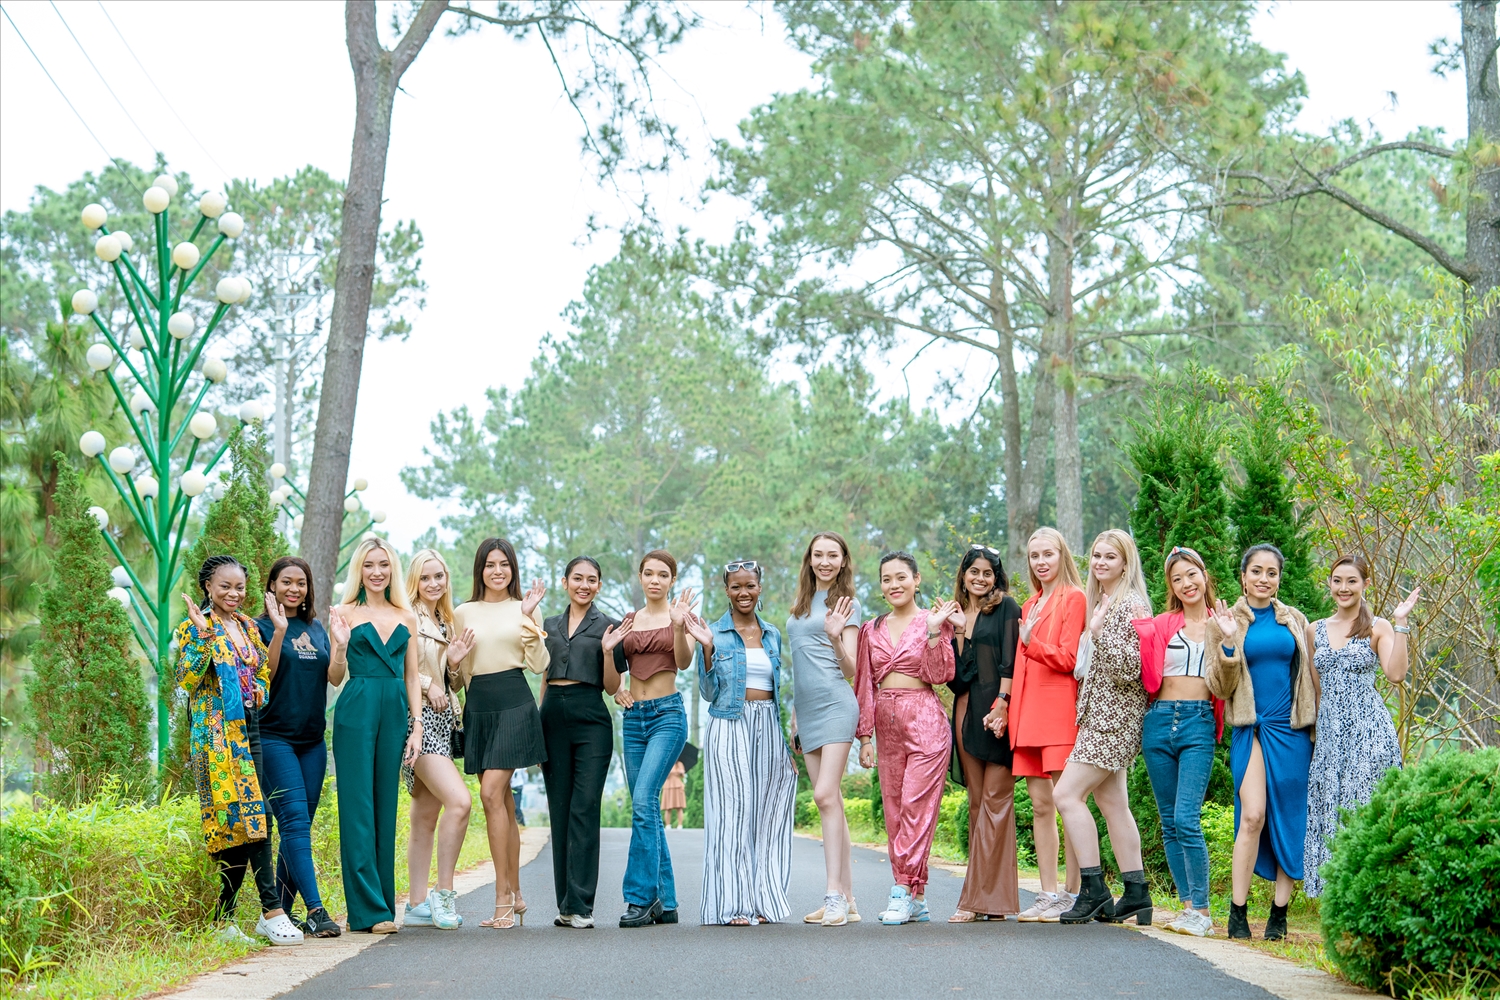 Đoàn thí sinh Hoa hậu Du lịch Thế giới 2022 luôn cùng nhau nở nụ cười rạng ngời trên môi tại mỗi điểm đến